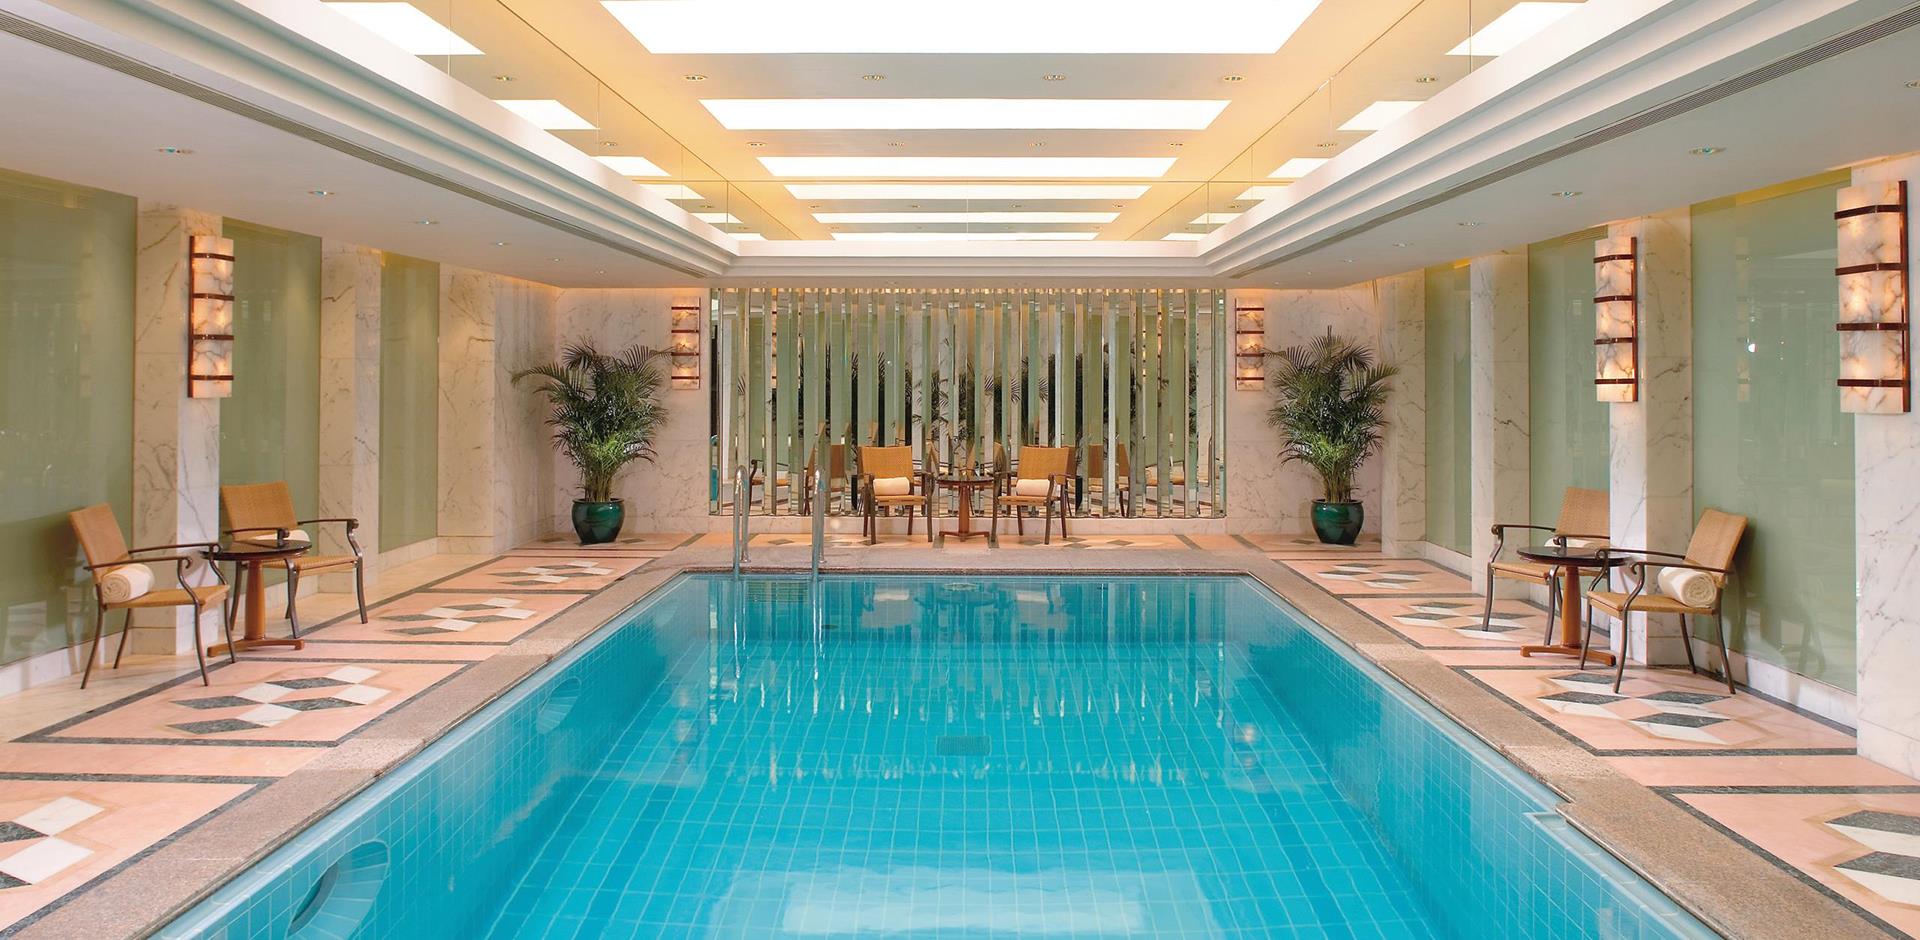 Pool, Mandarin Oriental Hong Kong, China, A&K